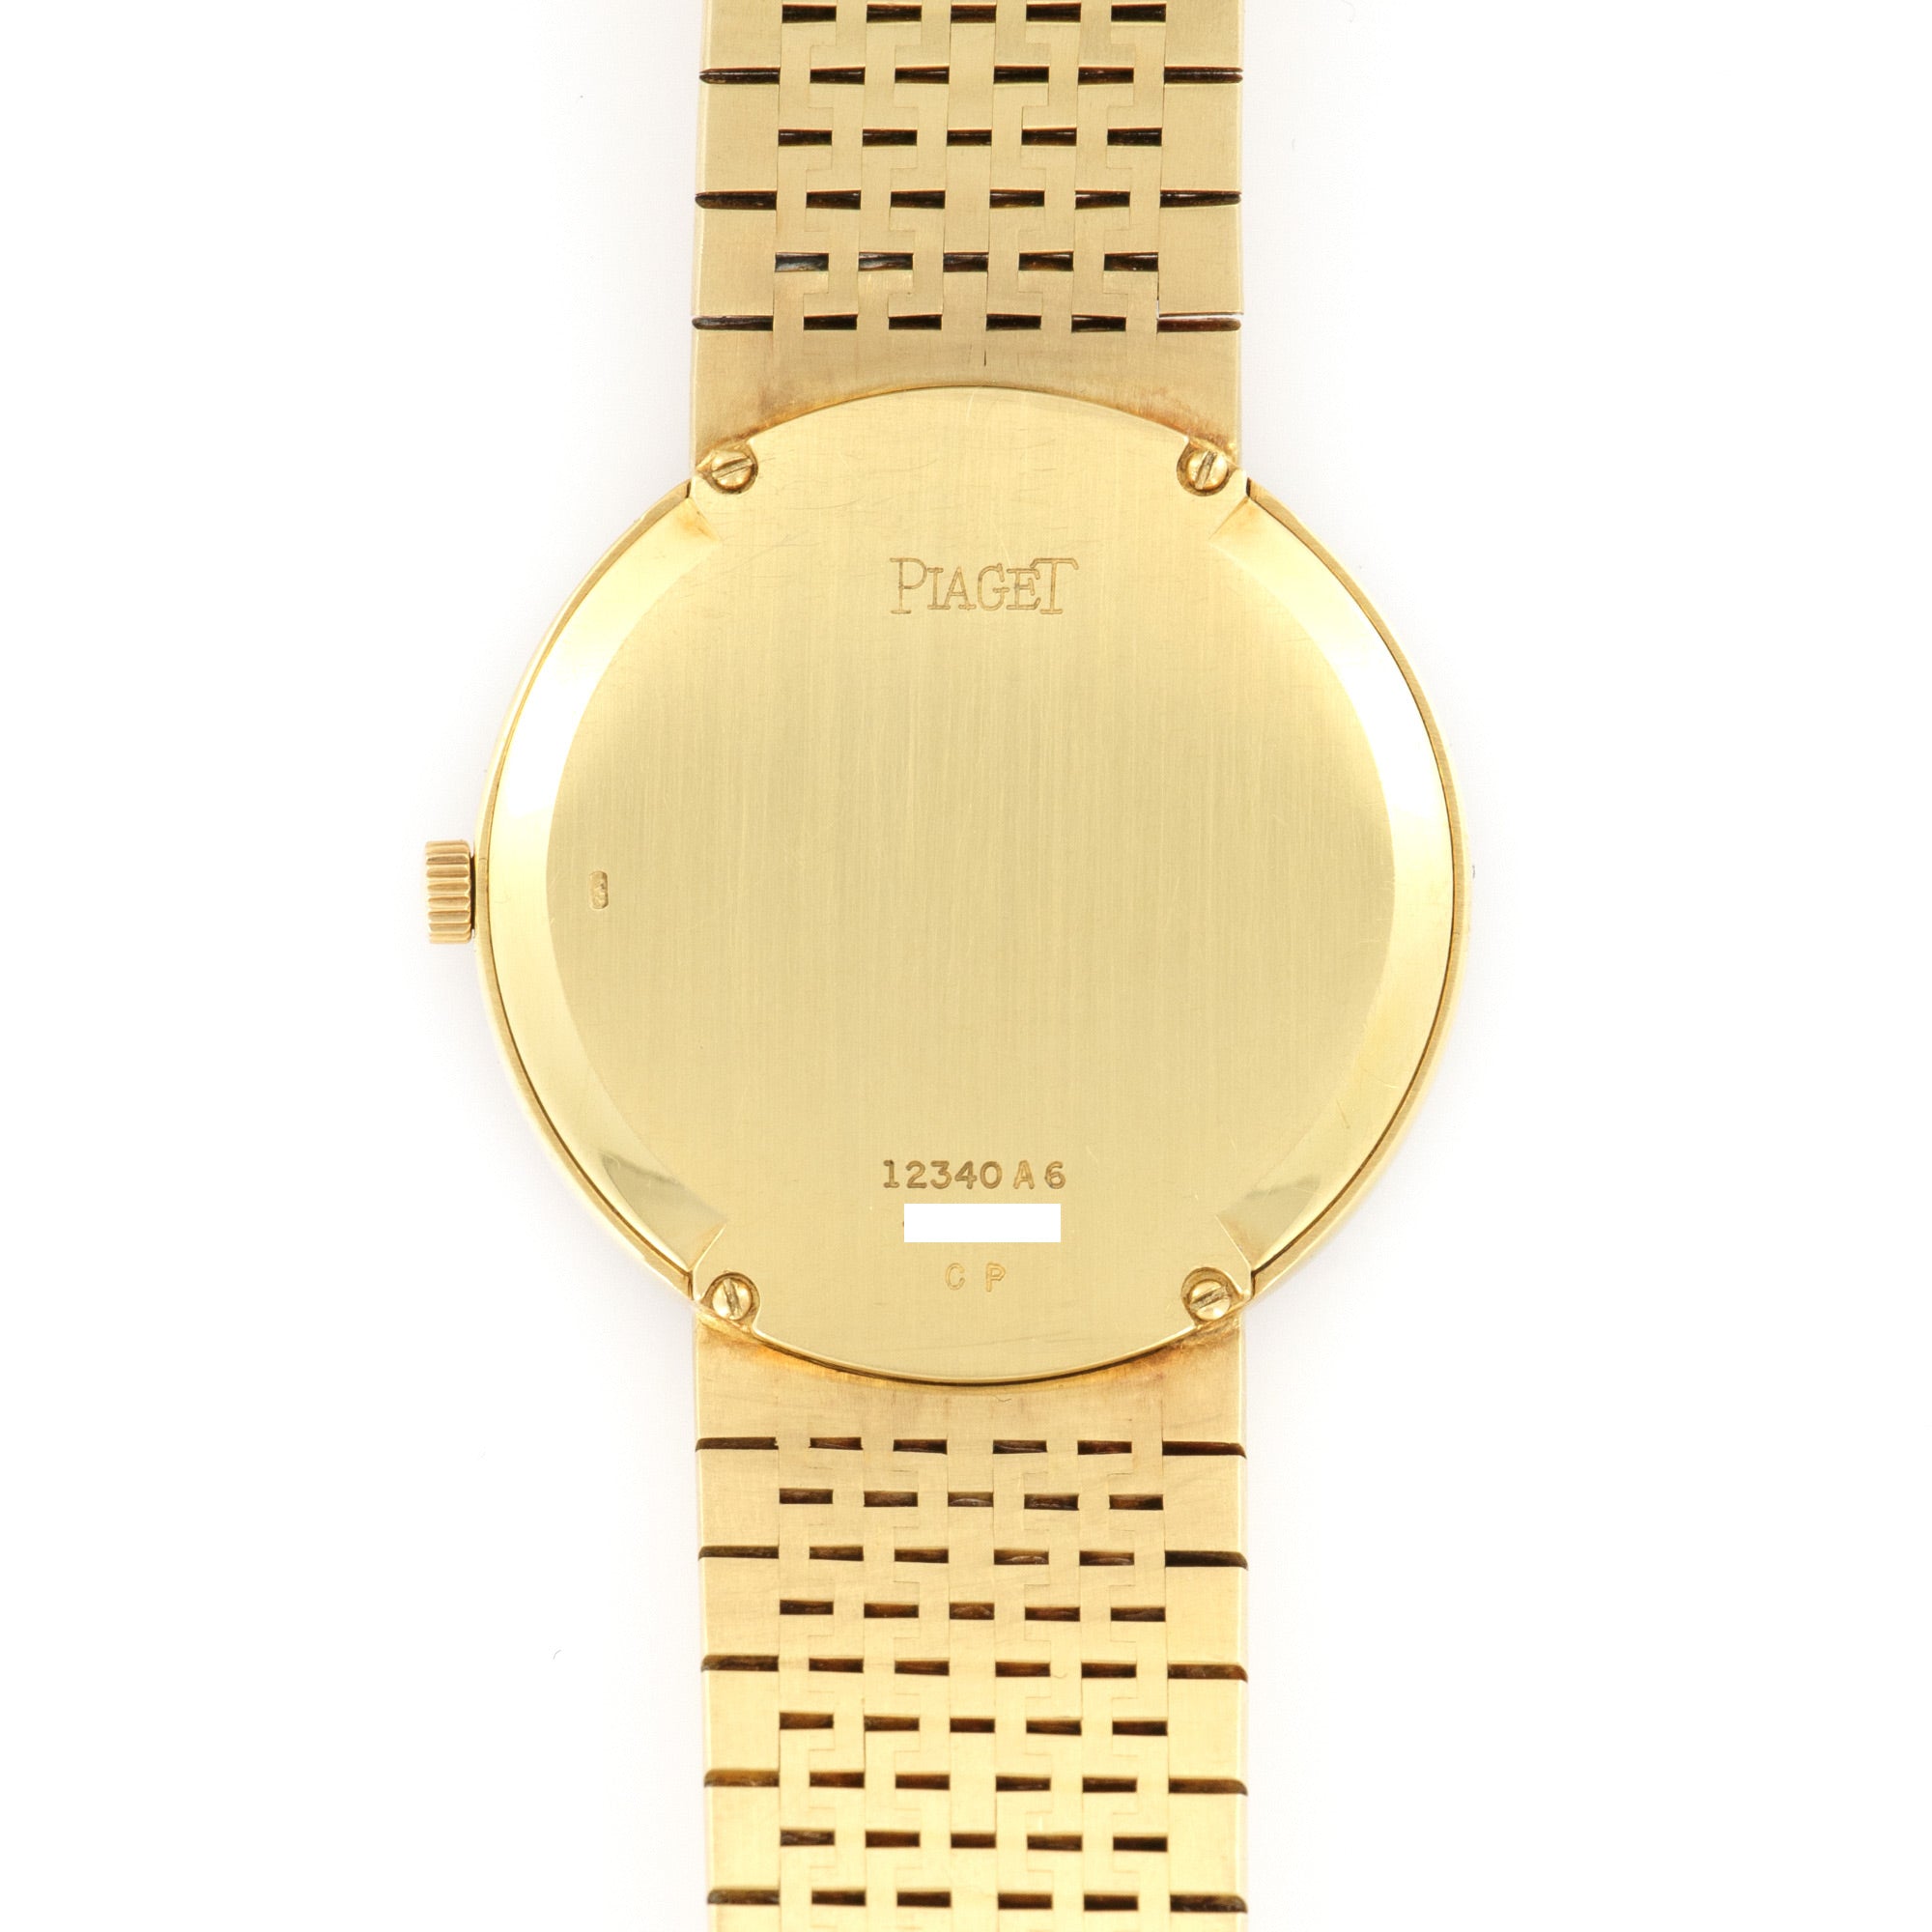 Piaget - Piaget Yellow Gold Diamond &amp; Onyx Watch - The Keystone Watches